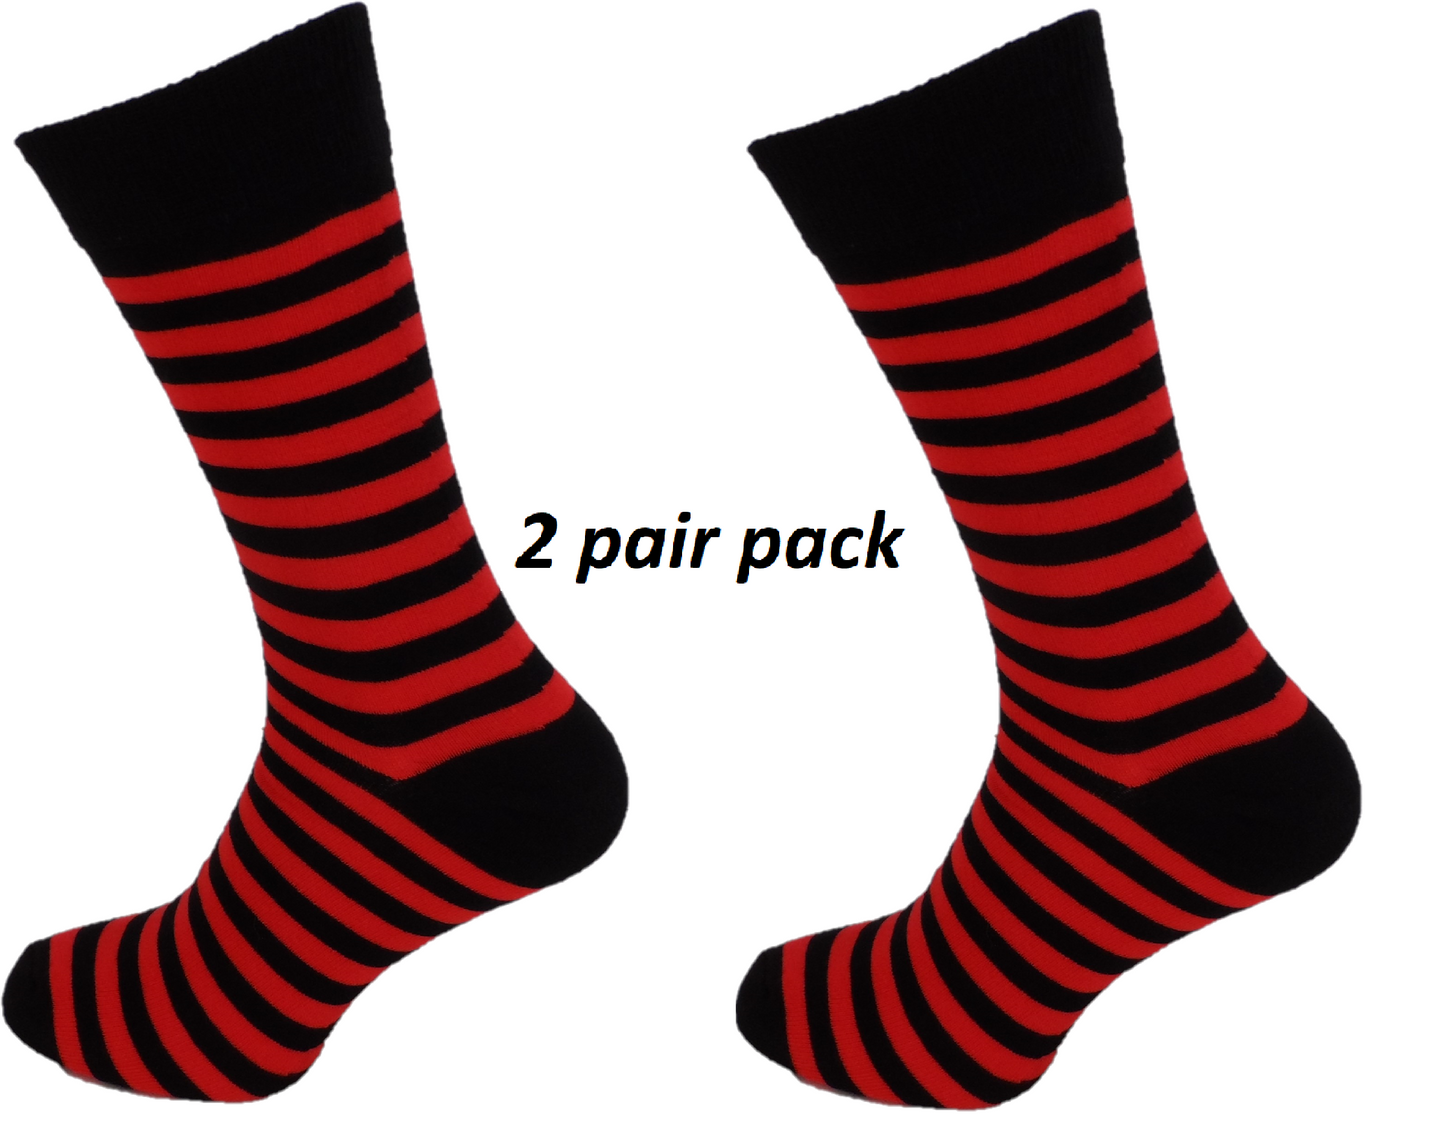 Schwarz-rot gestreifte Retro- Socks für Herren im 2er-Pack